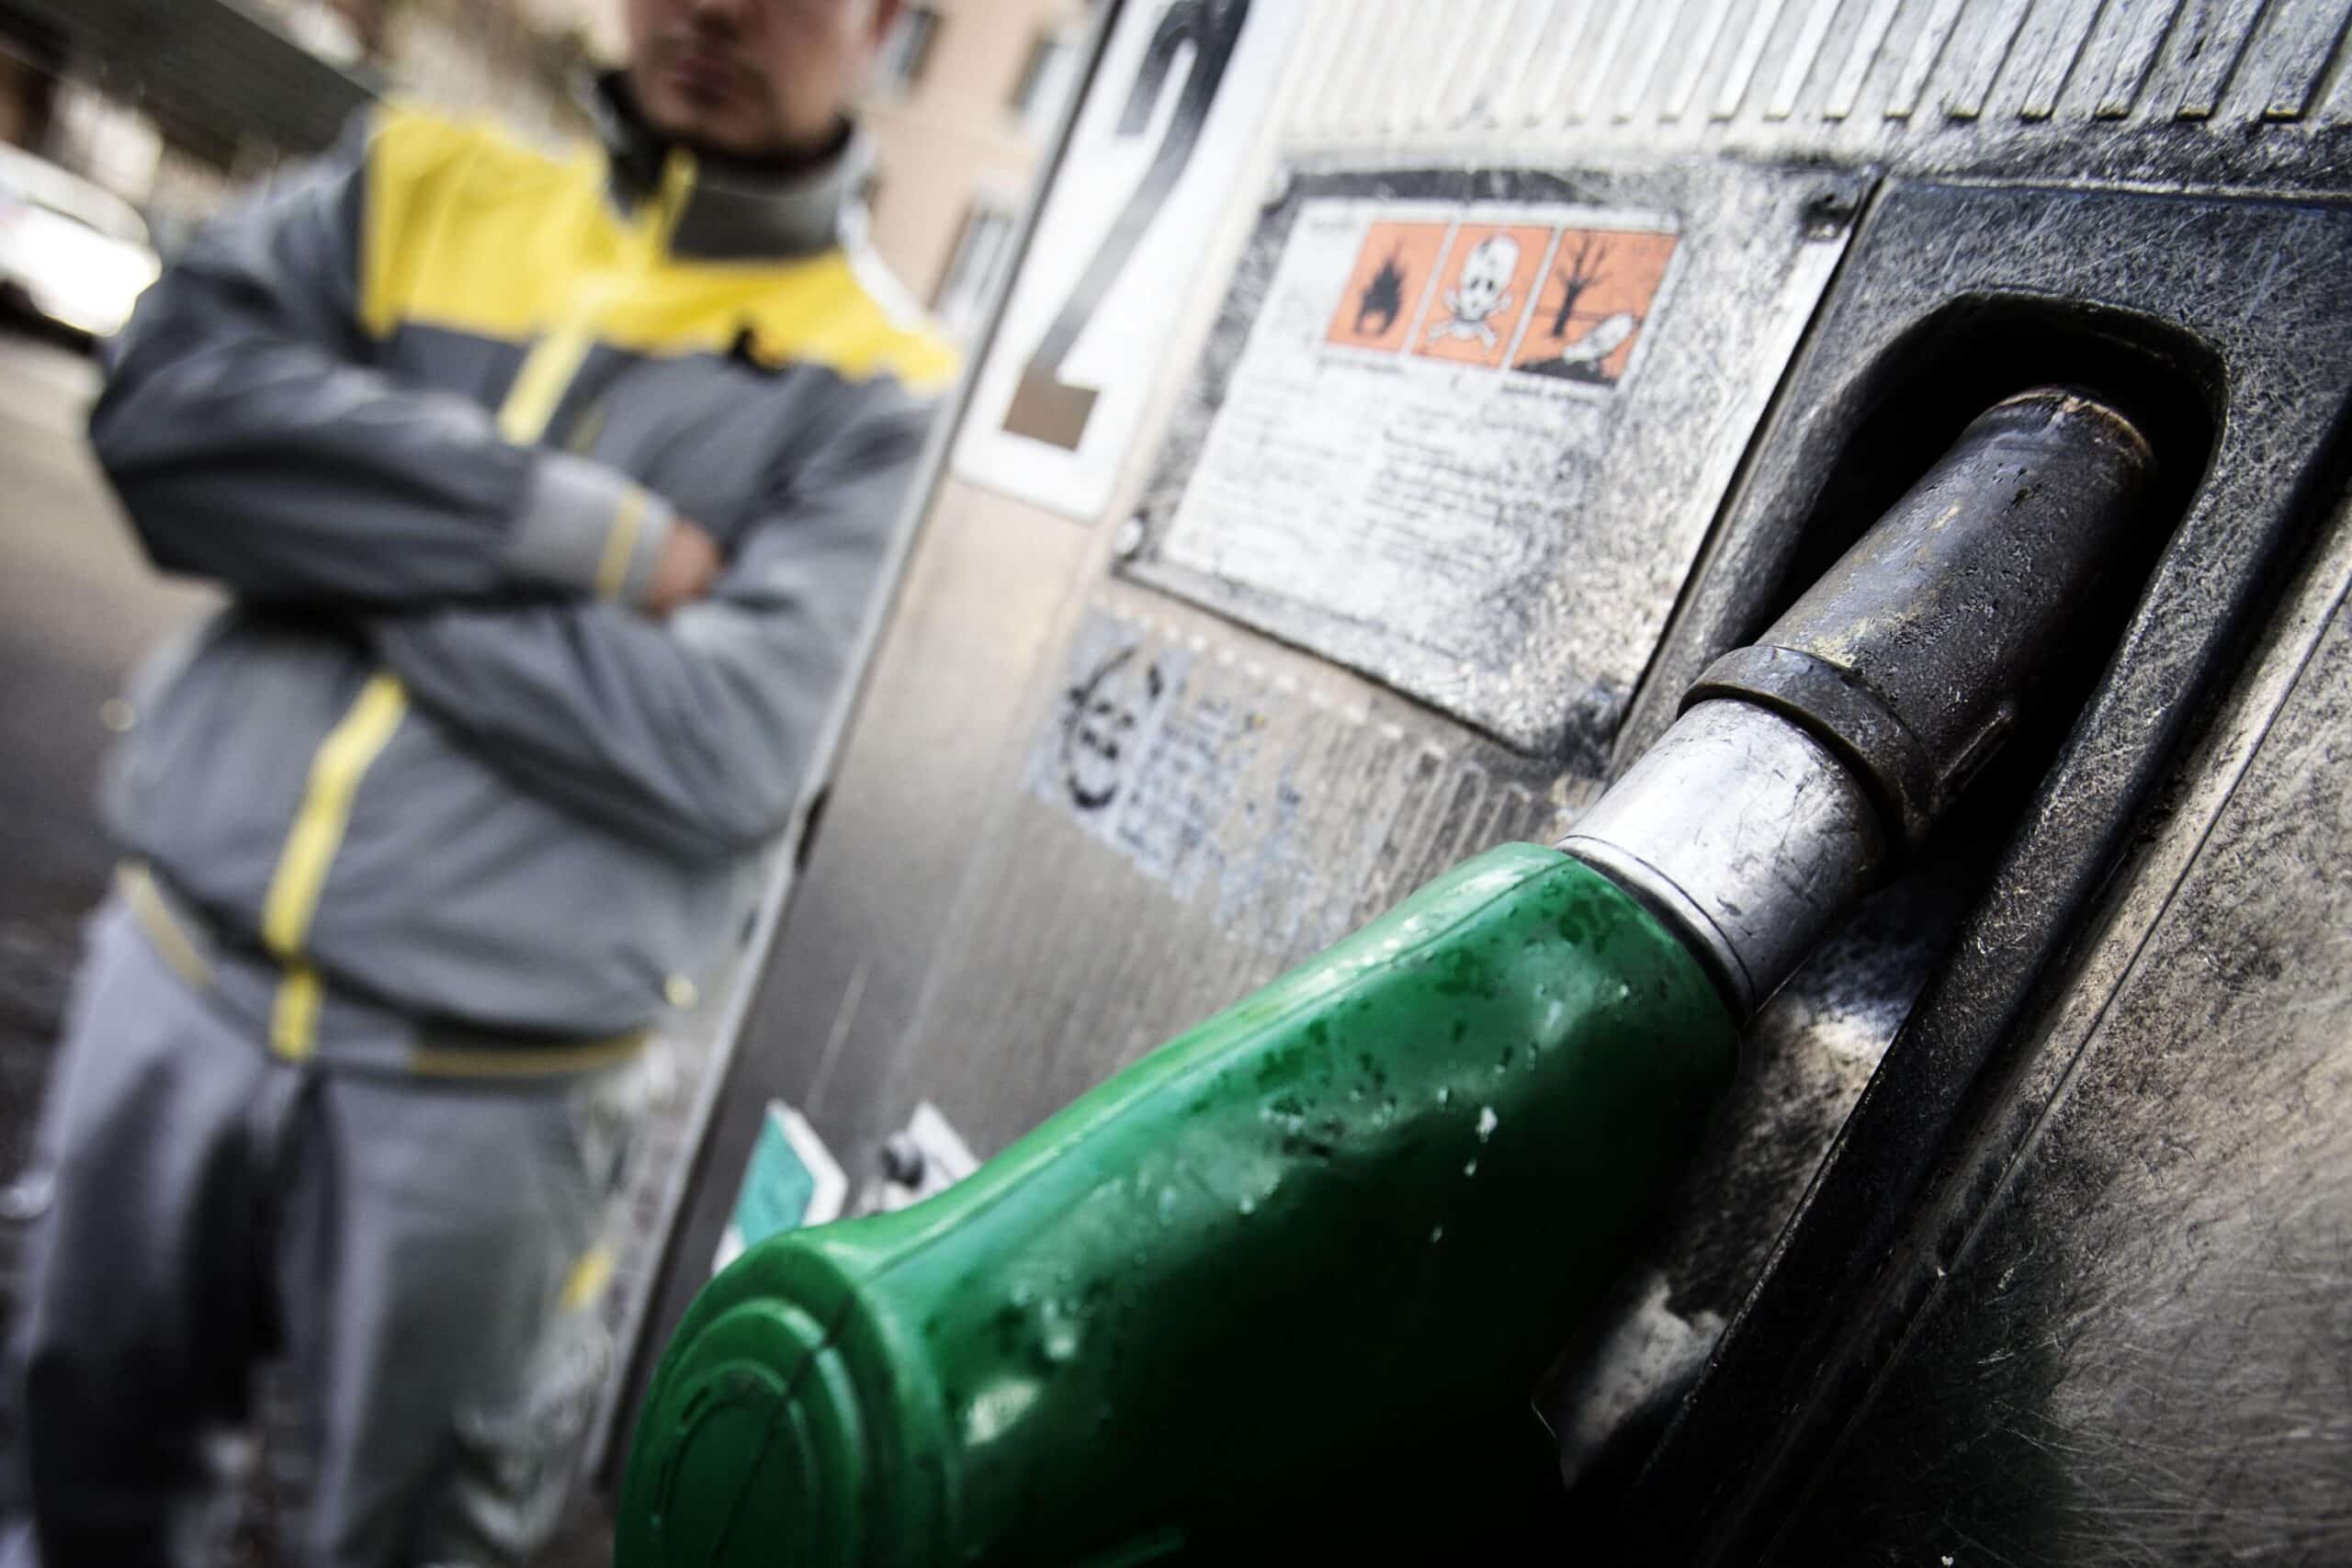 In arrivo un nuovo decreto che proroga il taglio delle accise sui carburanti fino al 5 agosto: la misura per contenere i costi di diesel e benzina.